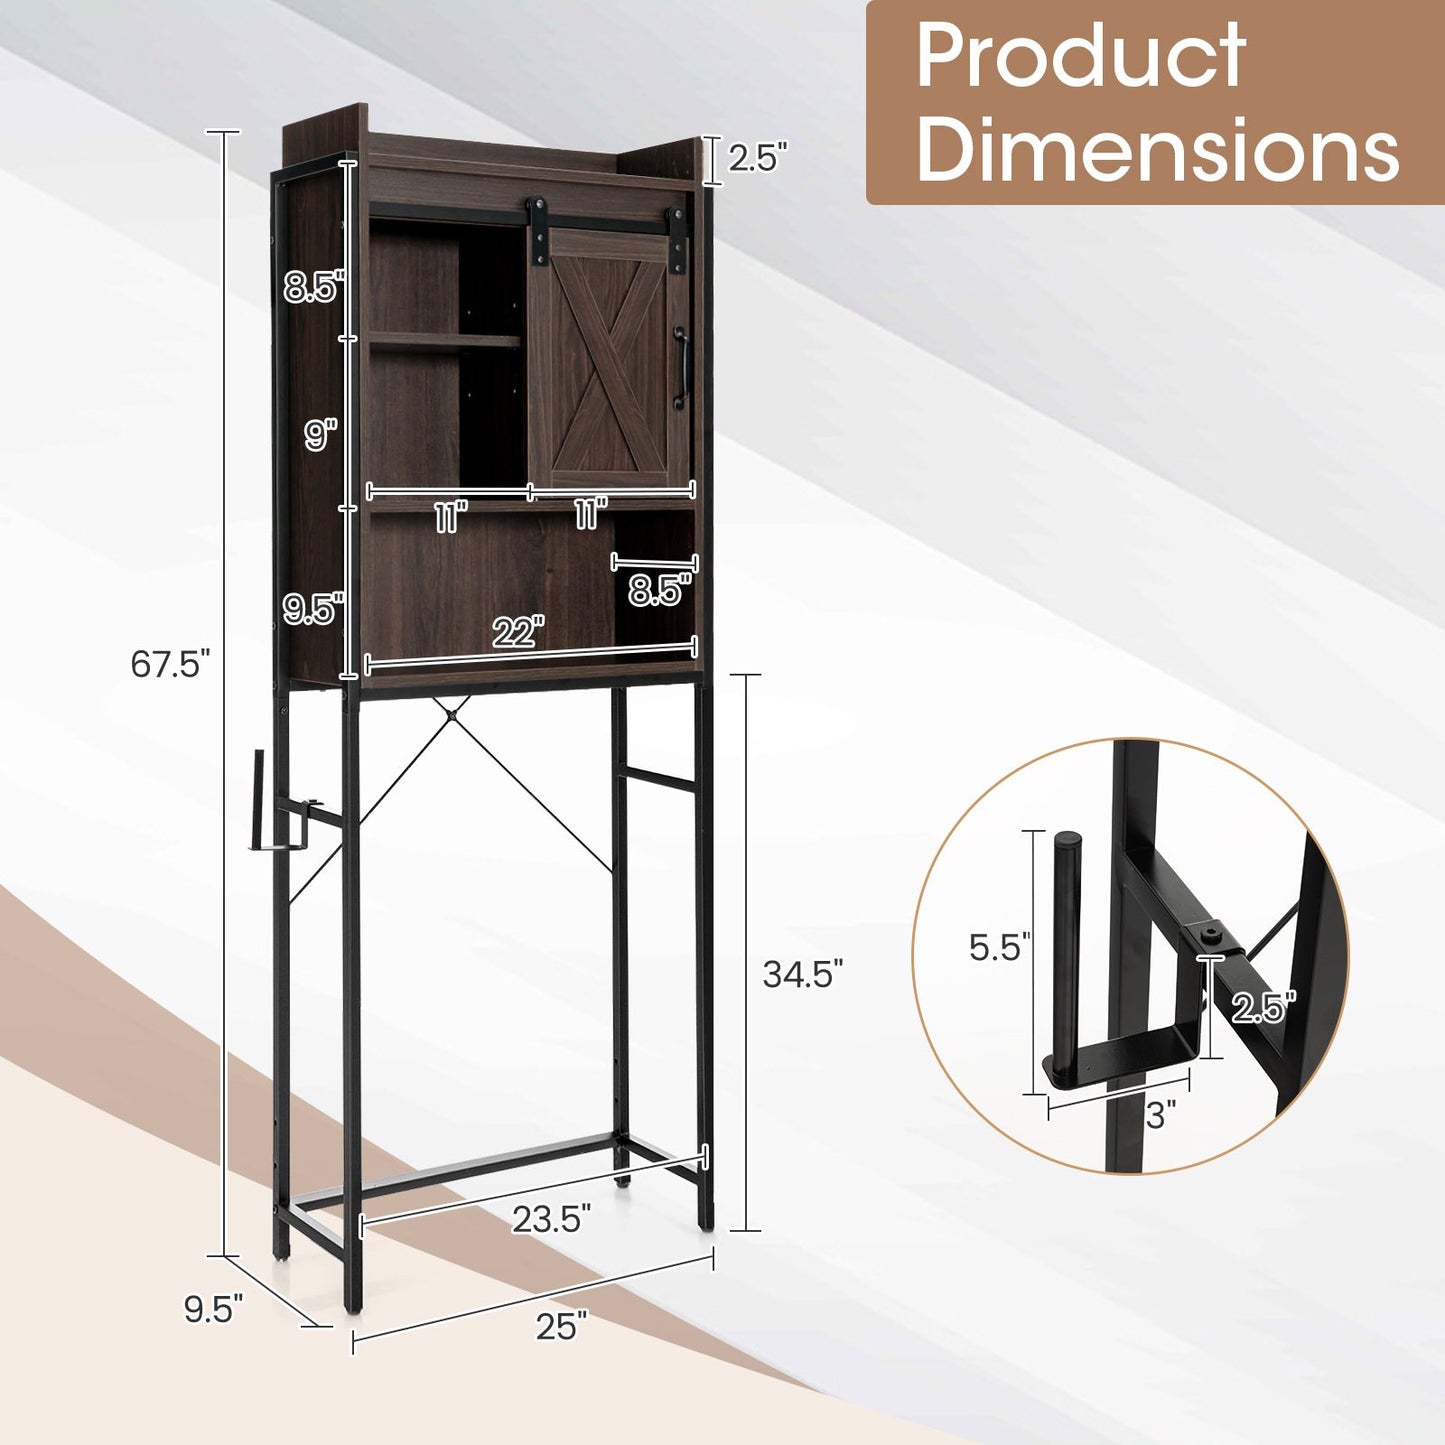 4-Tier Multifunctional Toilet Sorage Cabinet with Adjustable Shelf and Sliding Barn Door, Brown